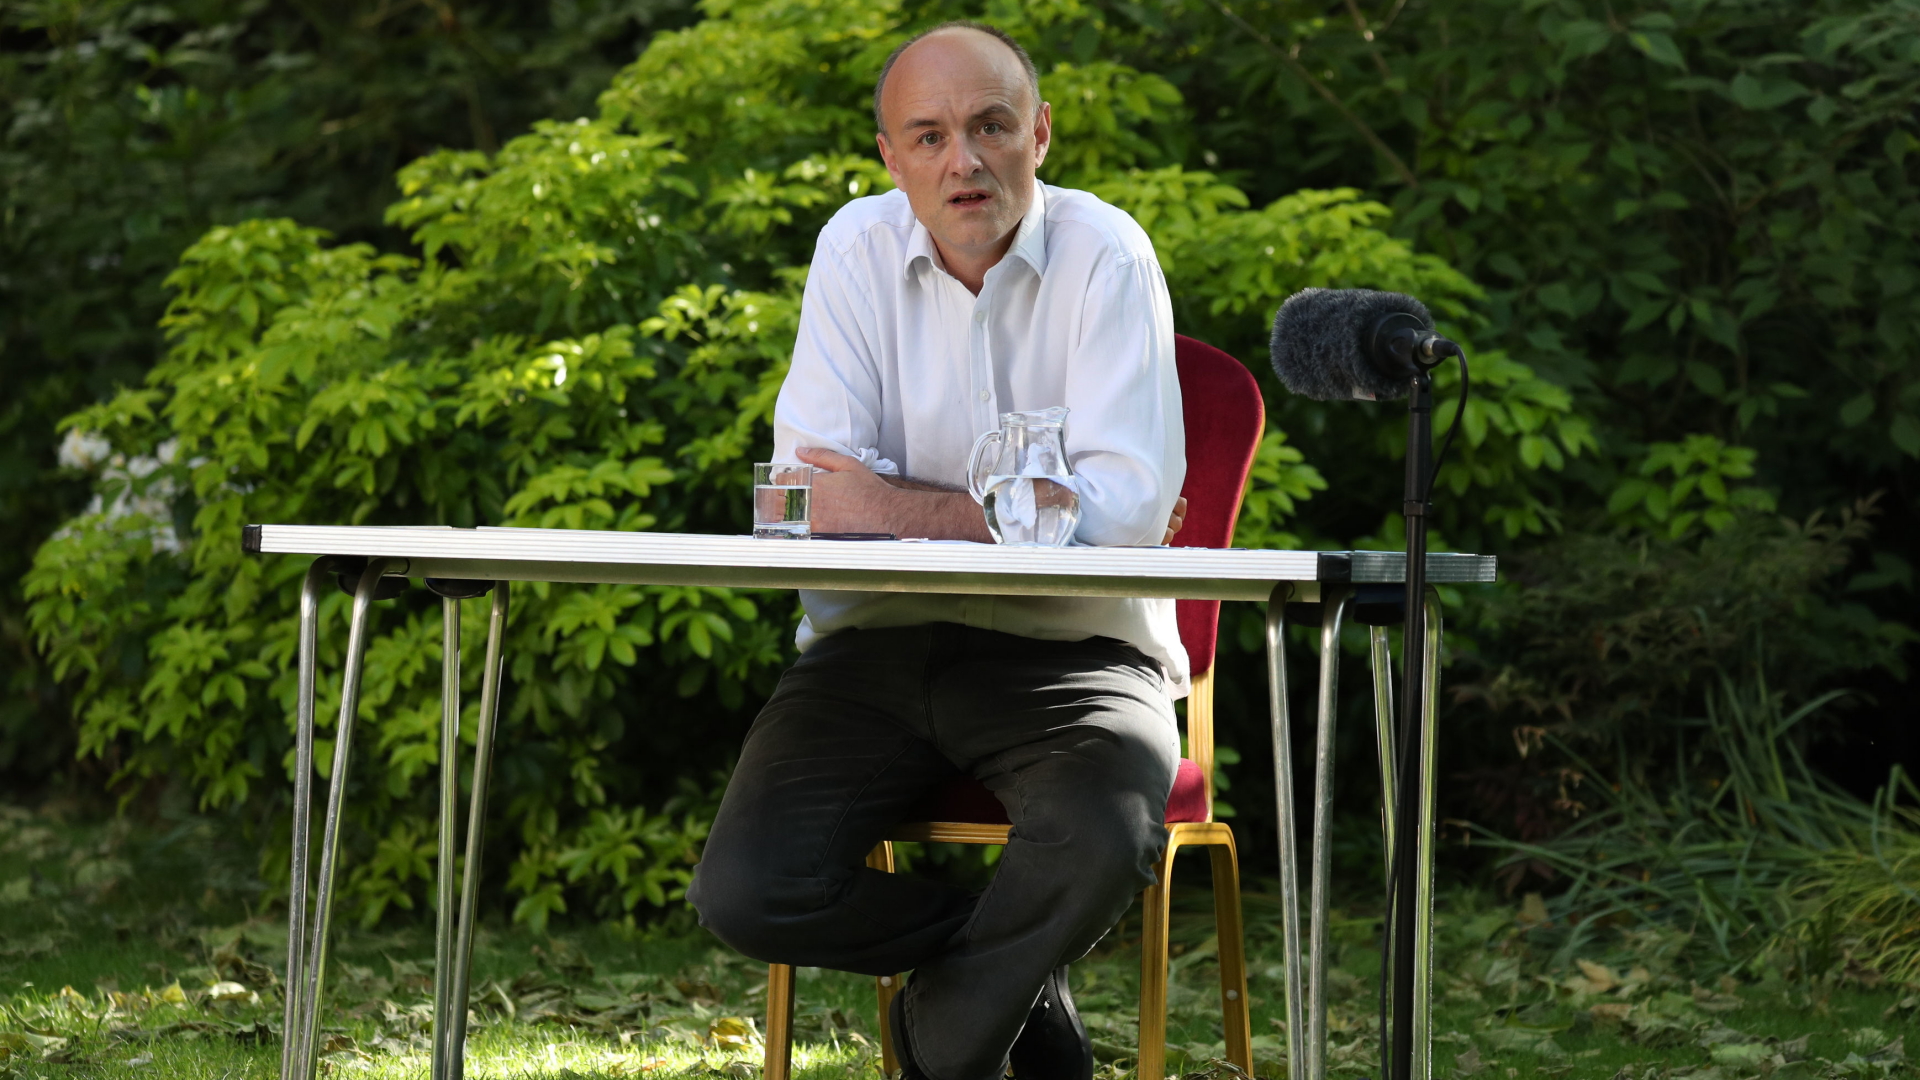 Regierungsberater Dominic Cummings gibt im Garten von 10 Downing Street eine Erklärung ab. | AFP